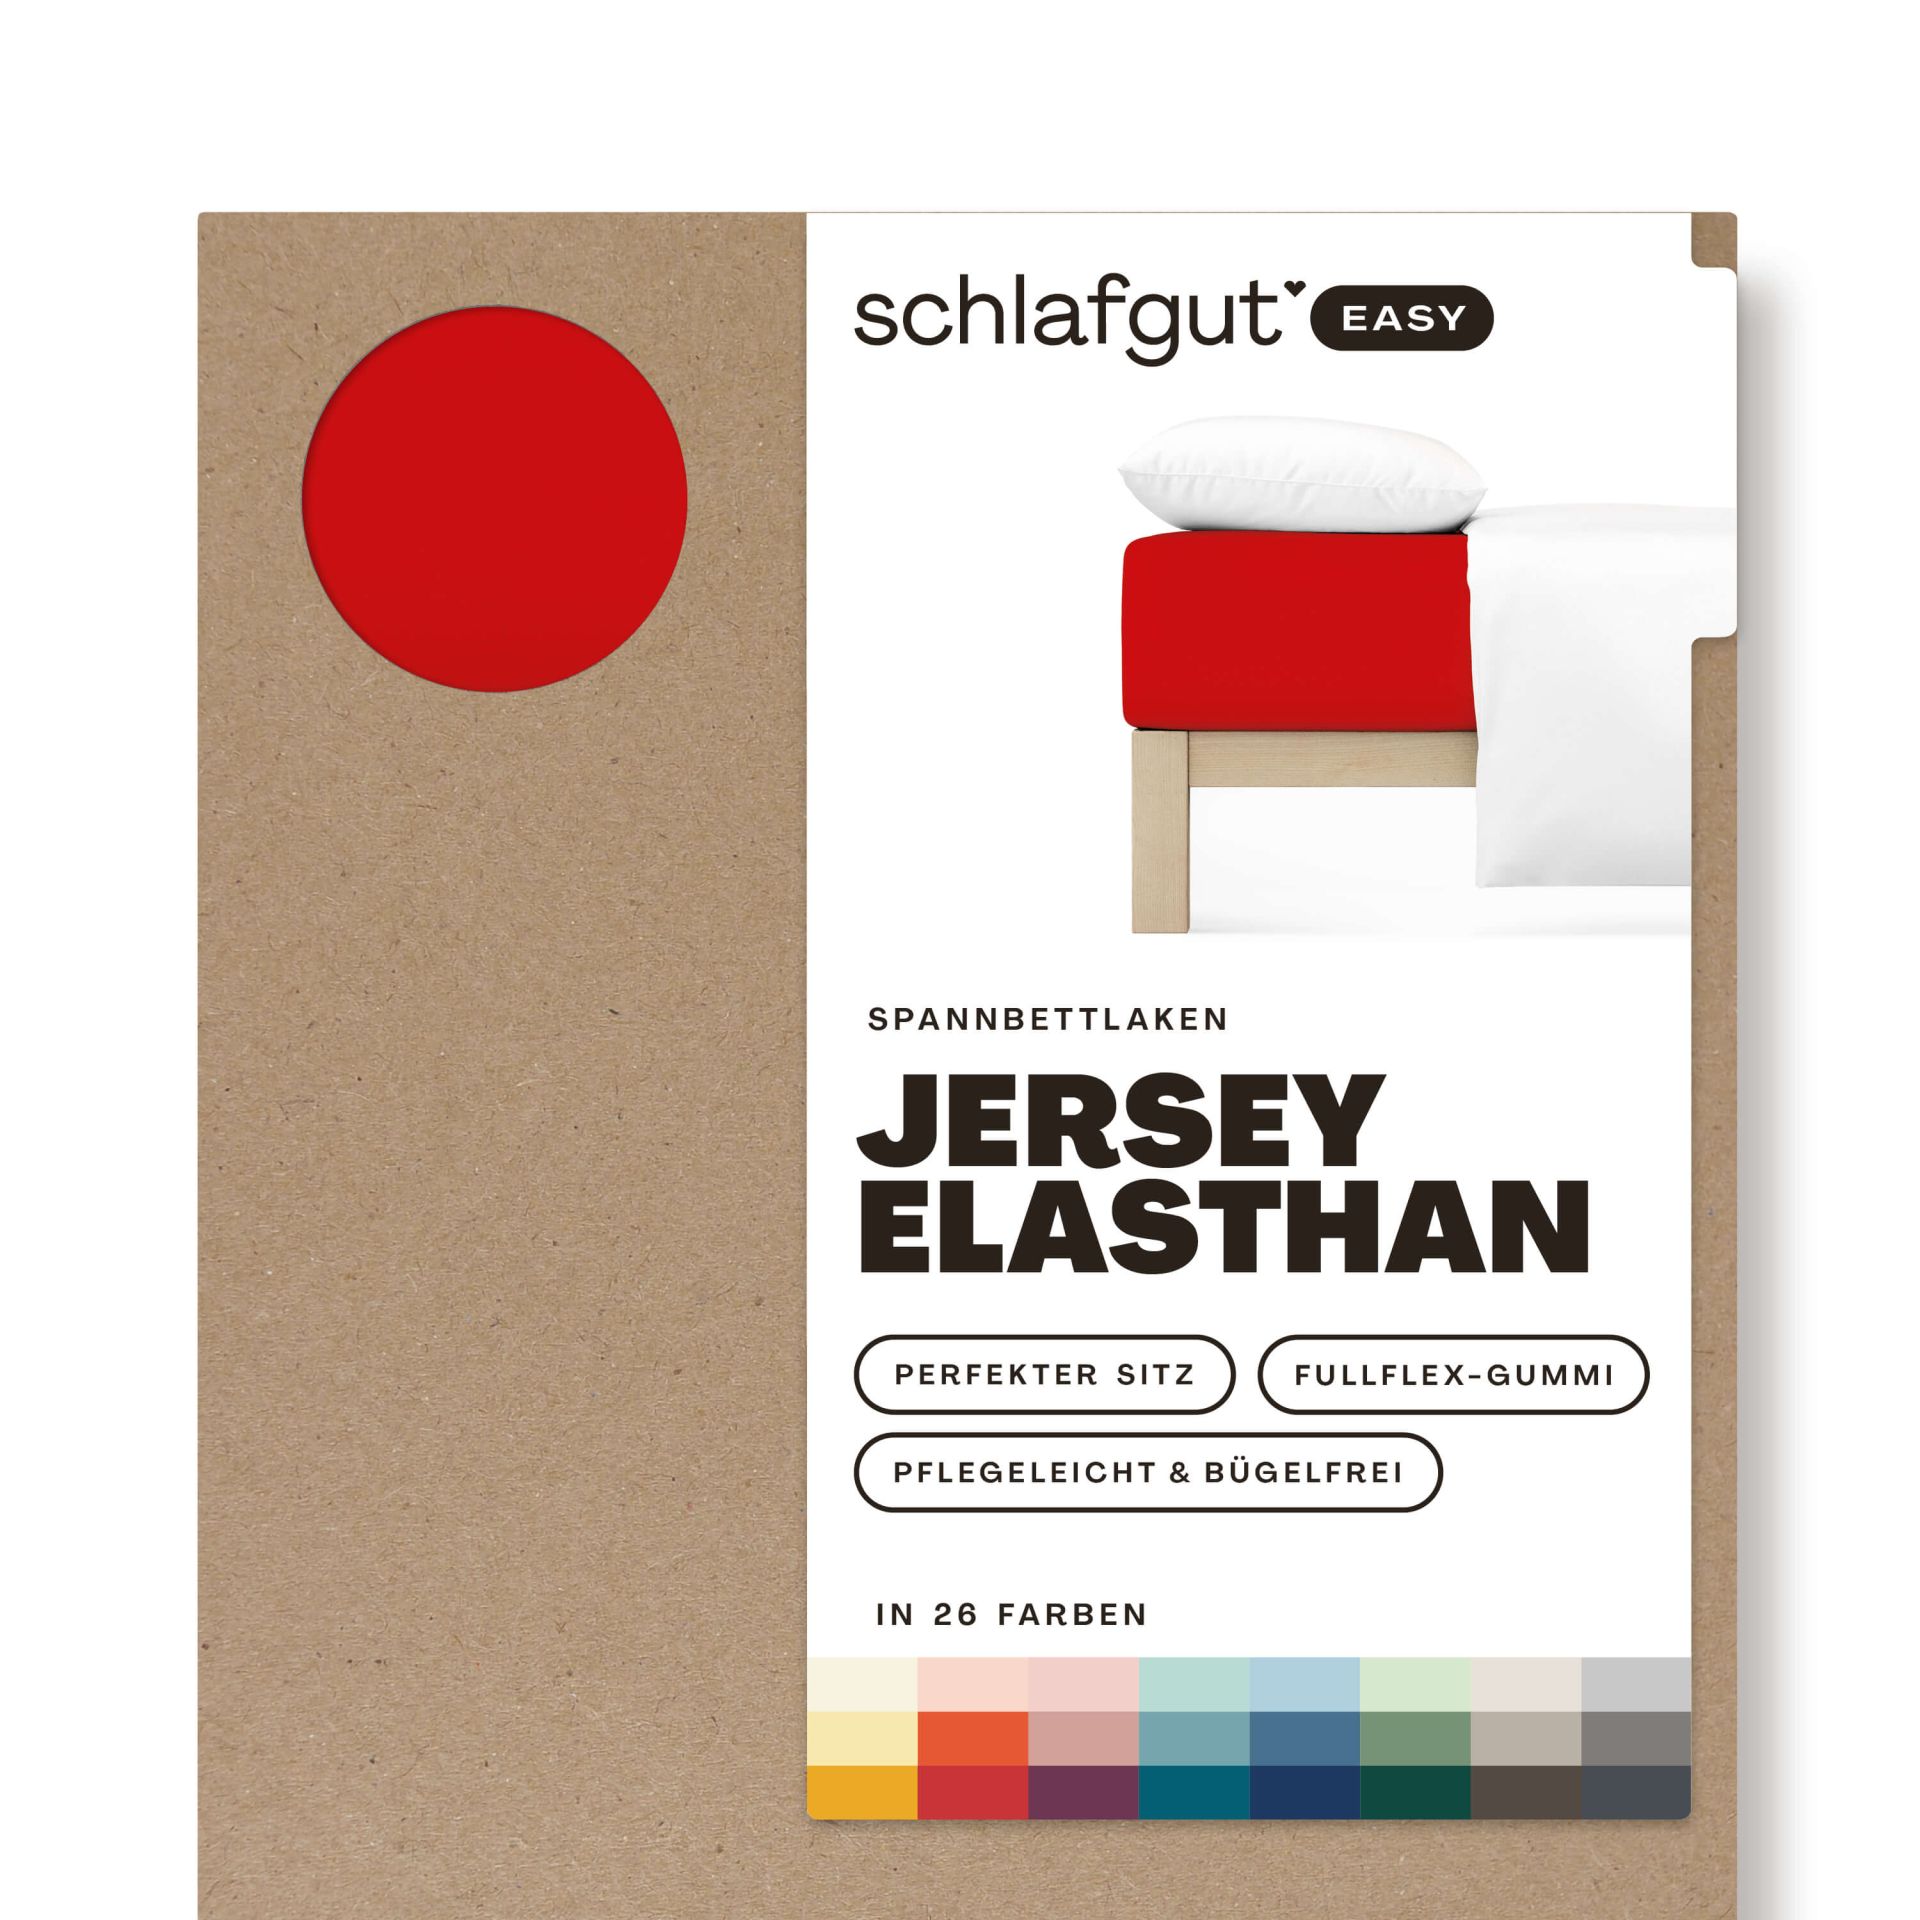 Das Produktbild vom Spannbettlaken der Reihe Easy Elasthan in Farbe red deep von Schlafgut